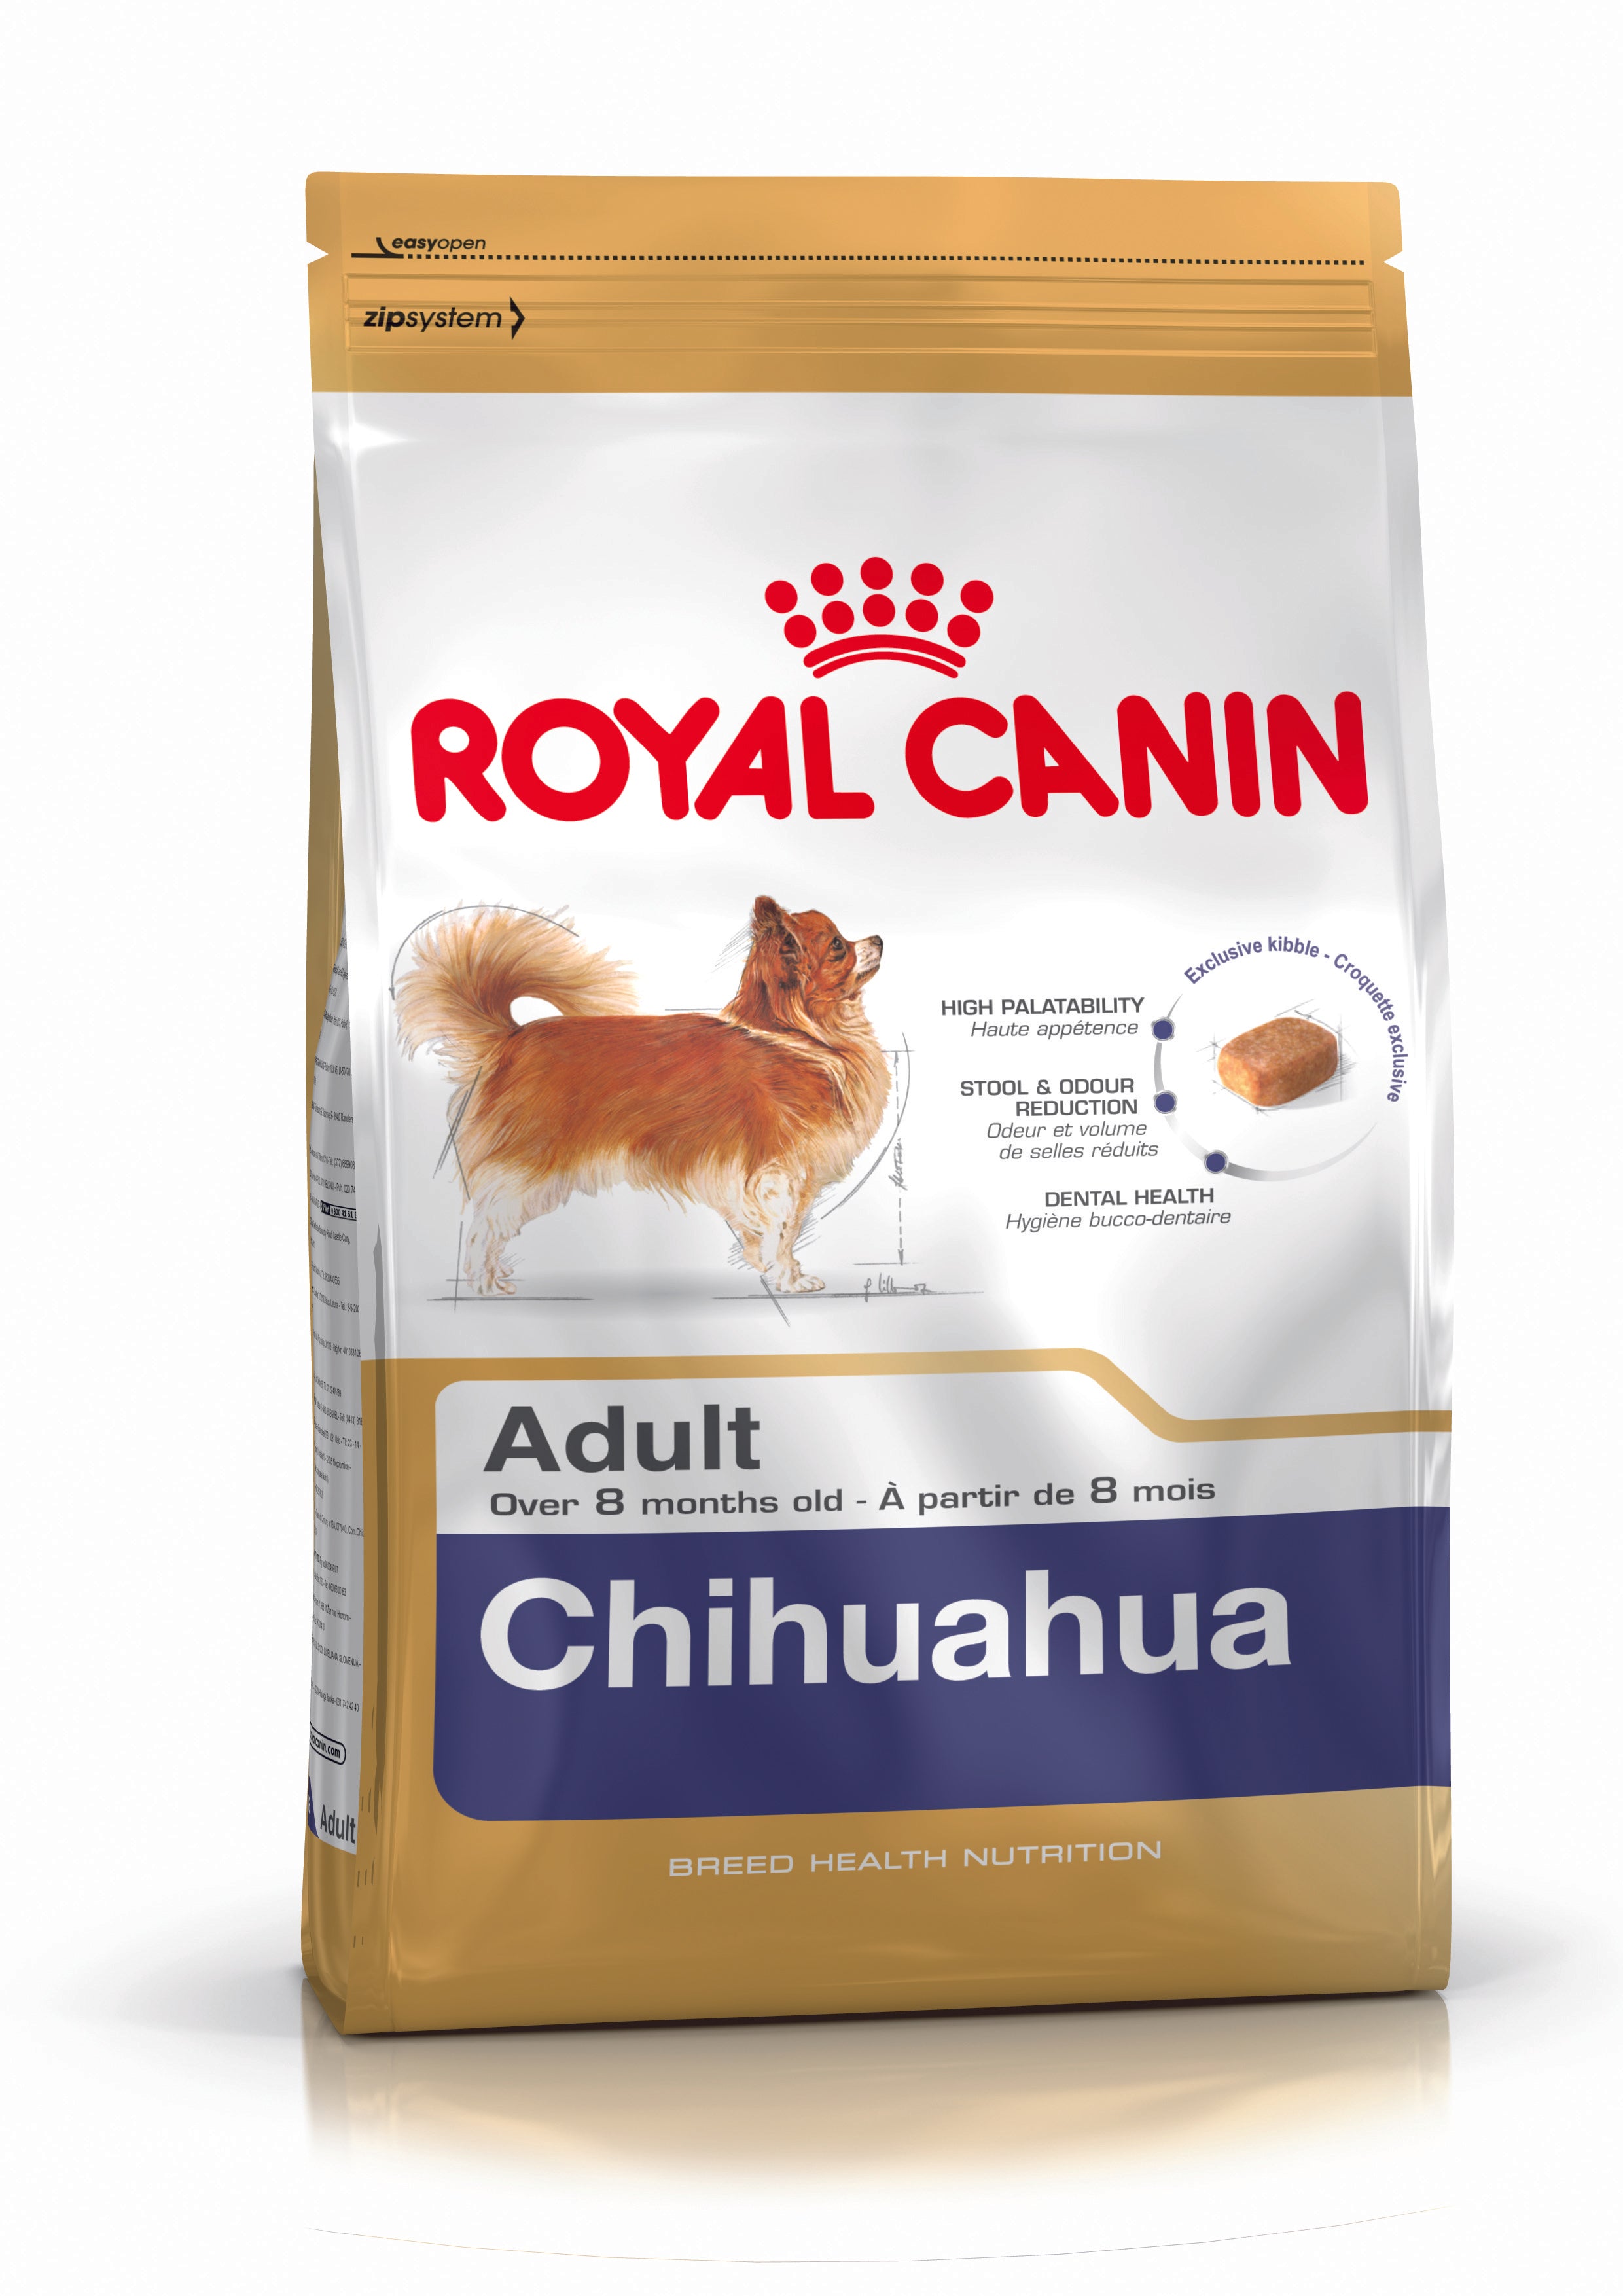 Royal Canin-Chihuahua Dog Food 1.5Kg